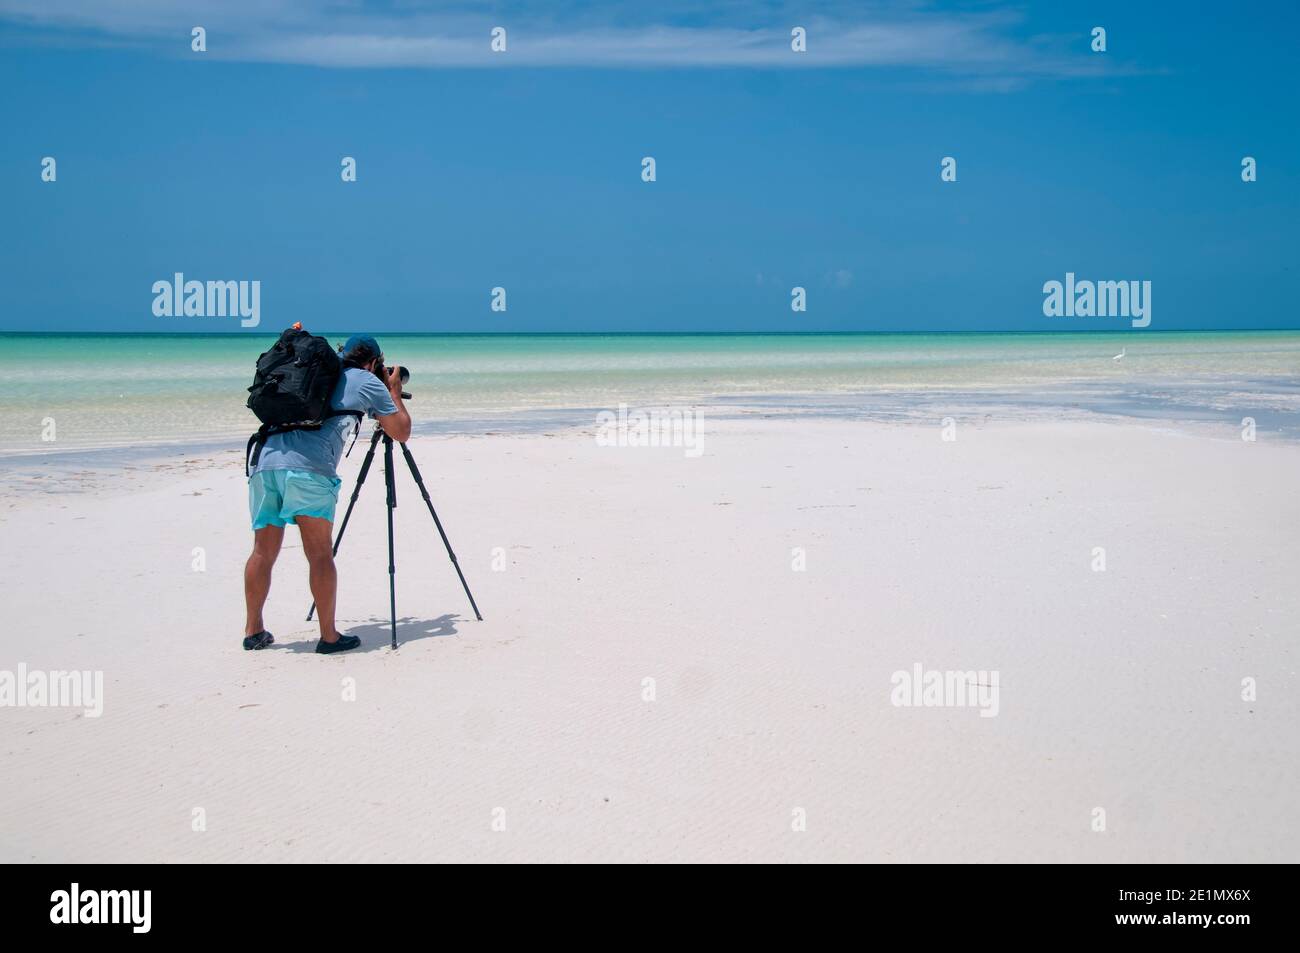 Fotografo con la sua fotocamera sul suo trespolo scatta fotografie di paesaggio a bassa marea sull'isola di Holbox, Messico. Sullo sfondo il cielo blu An Foto Stock